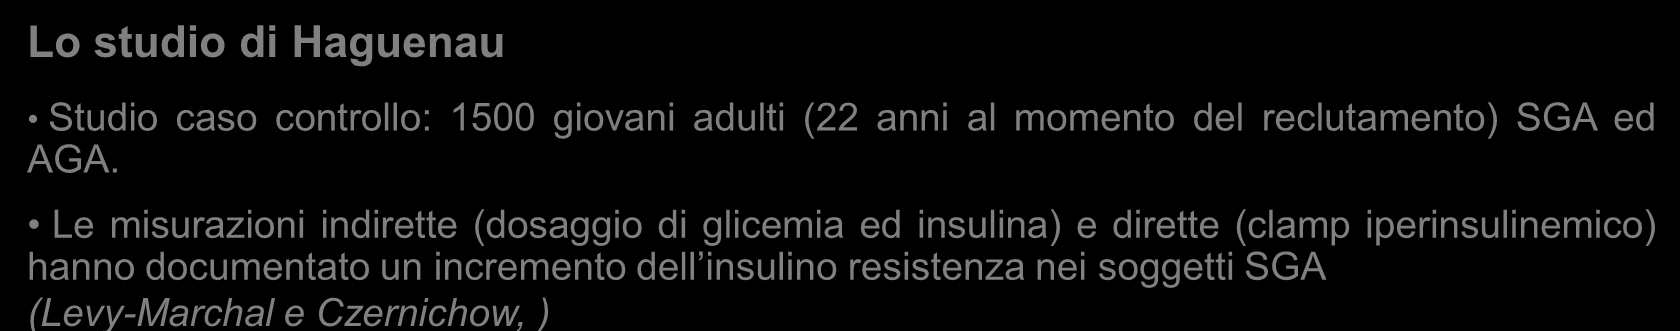 Concentrazione media di insulina a digiuno (mui/l) Captazione periferica media del glucosio (mg/kgffm/min) Insulino-resistenza e SGA Dal 1993, molti studi hanno documentato insulino-resistenza in